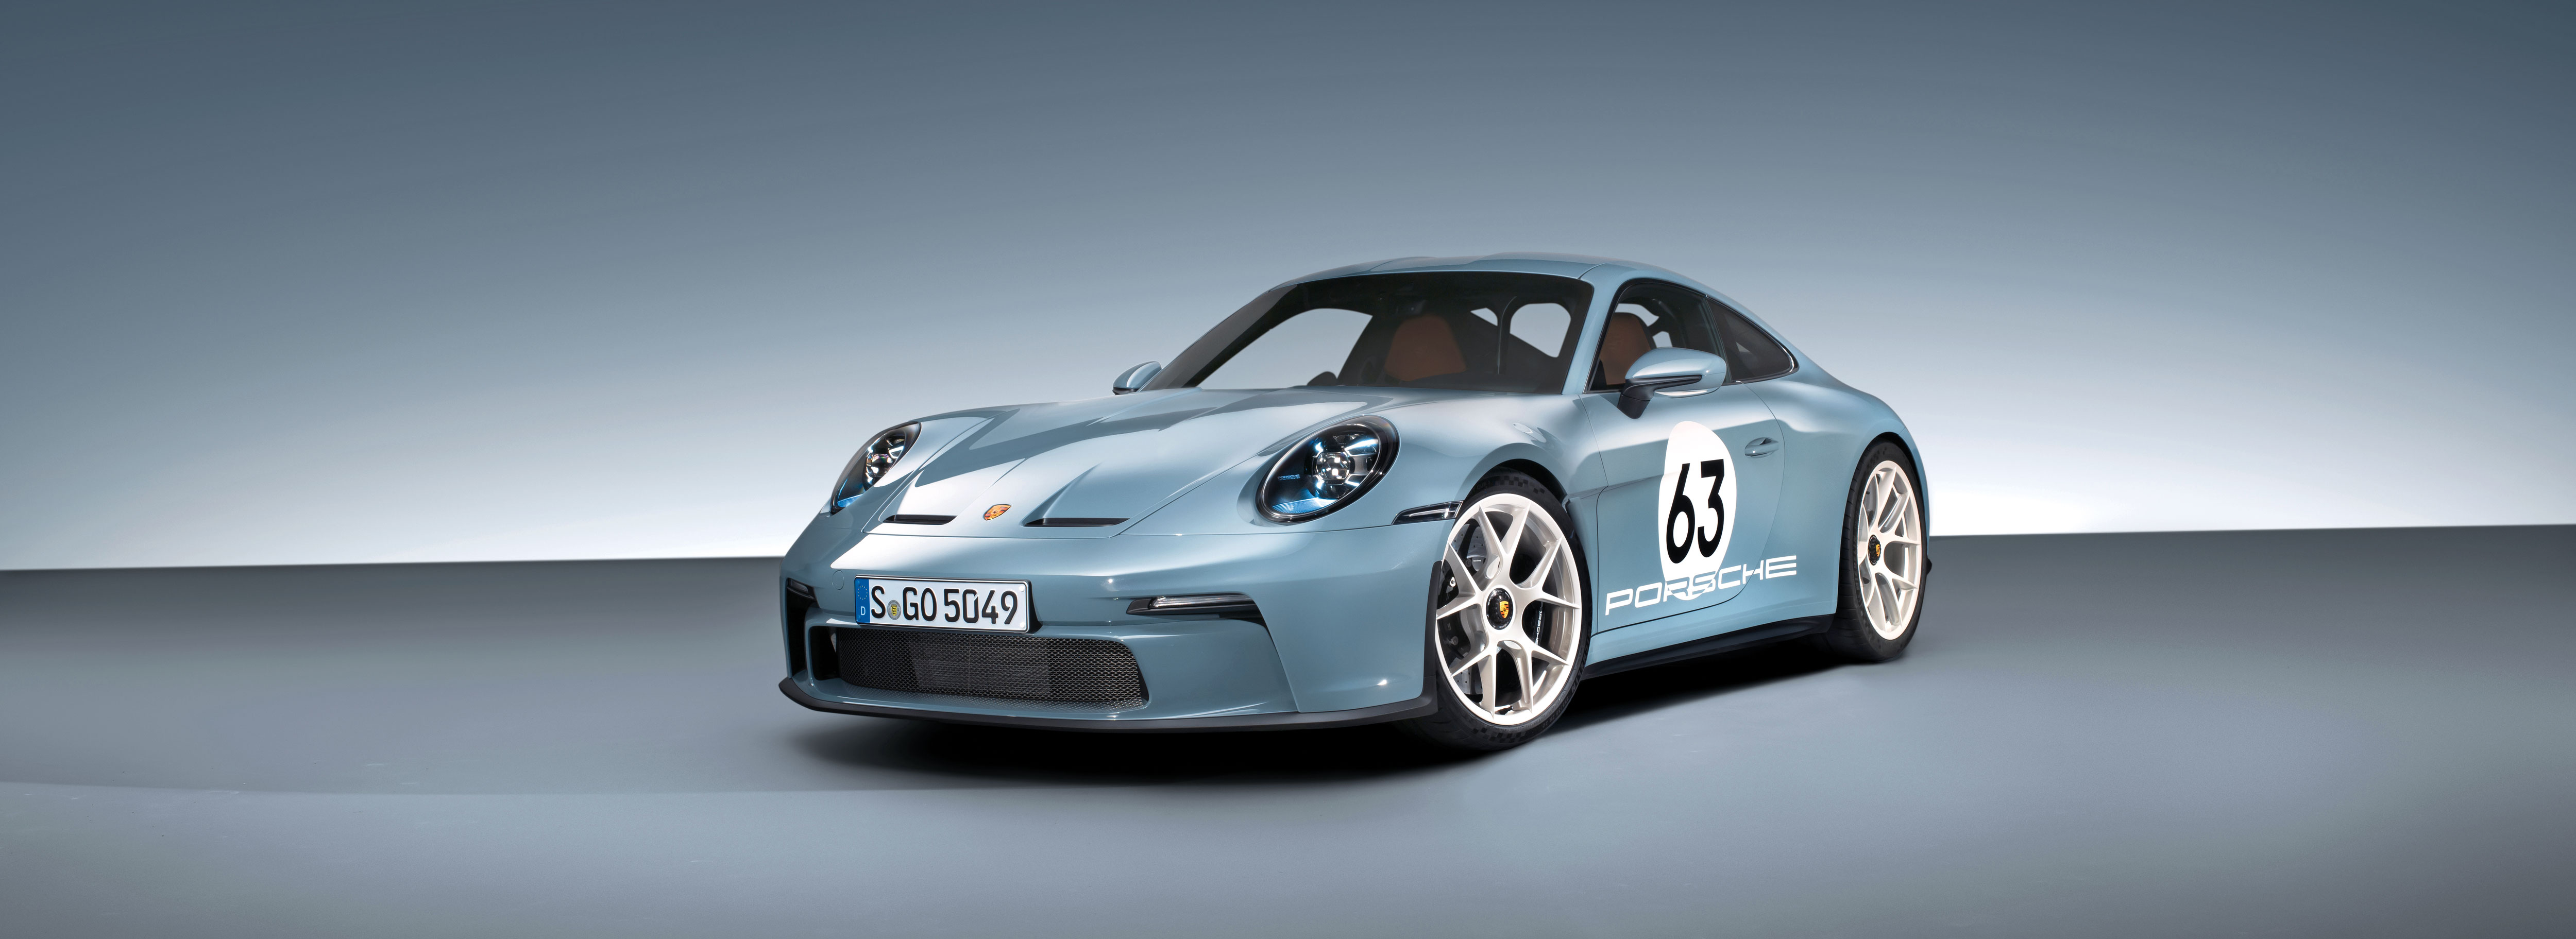 Porsche 911 S/T - Porsche AG